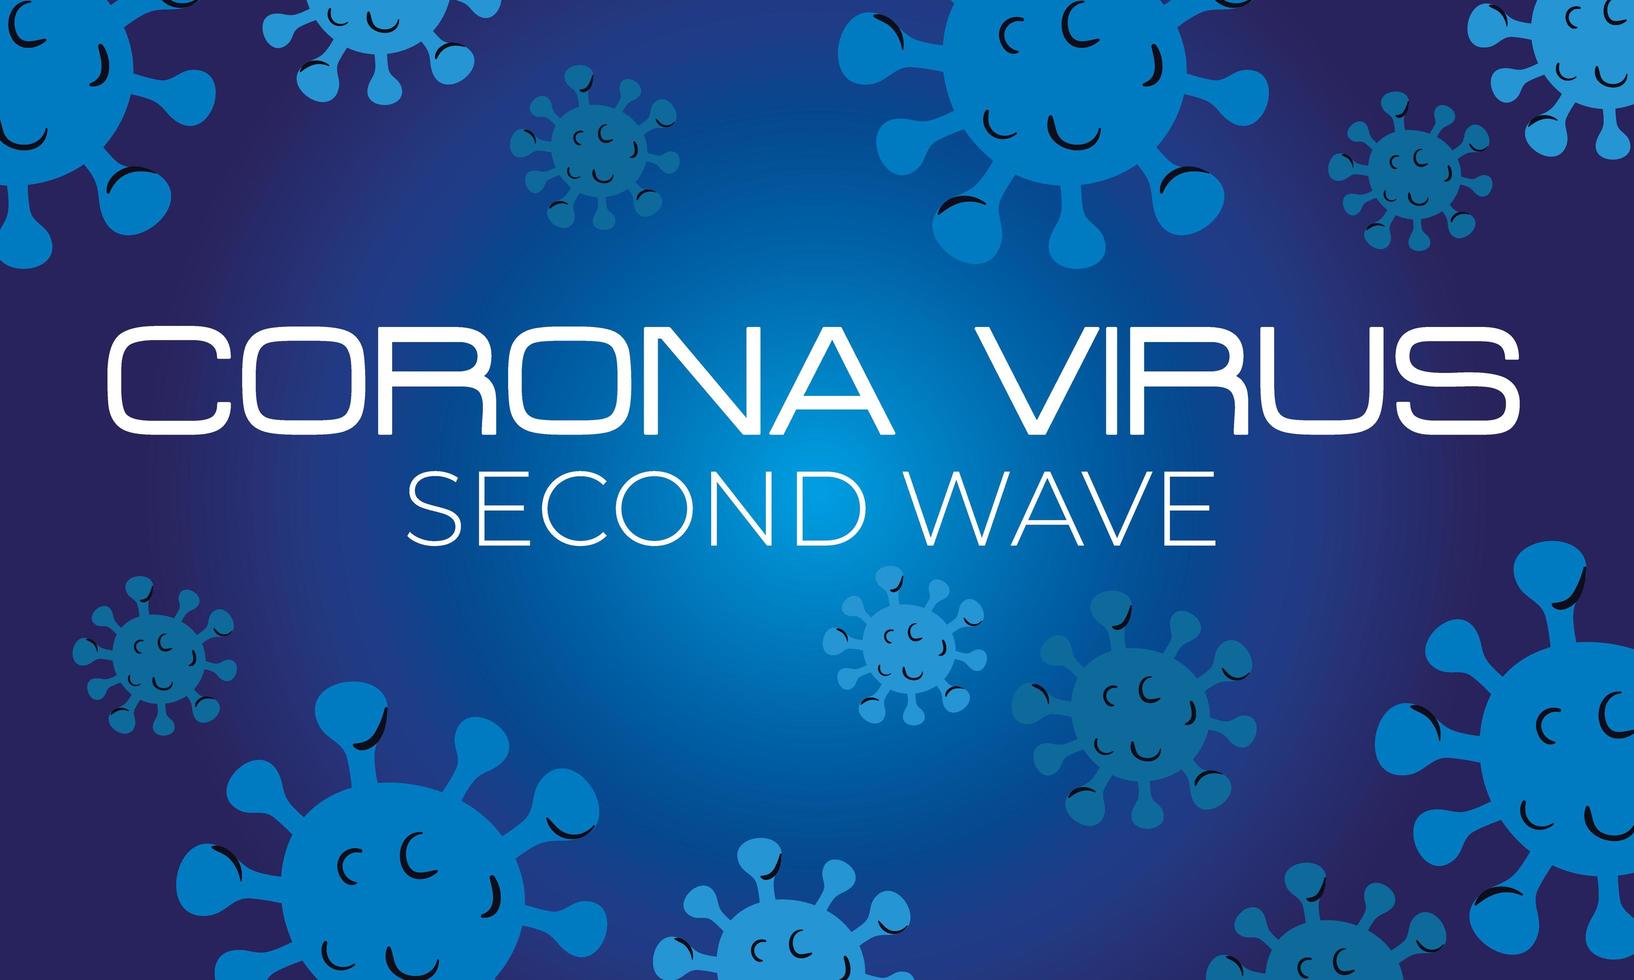 pôster da segunda onda do vírus corona com partículas em fundo azul vetor